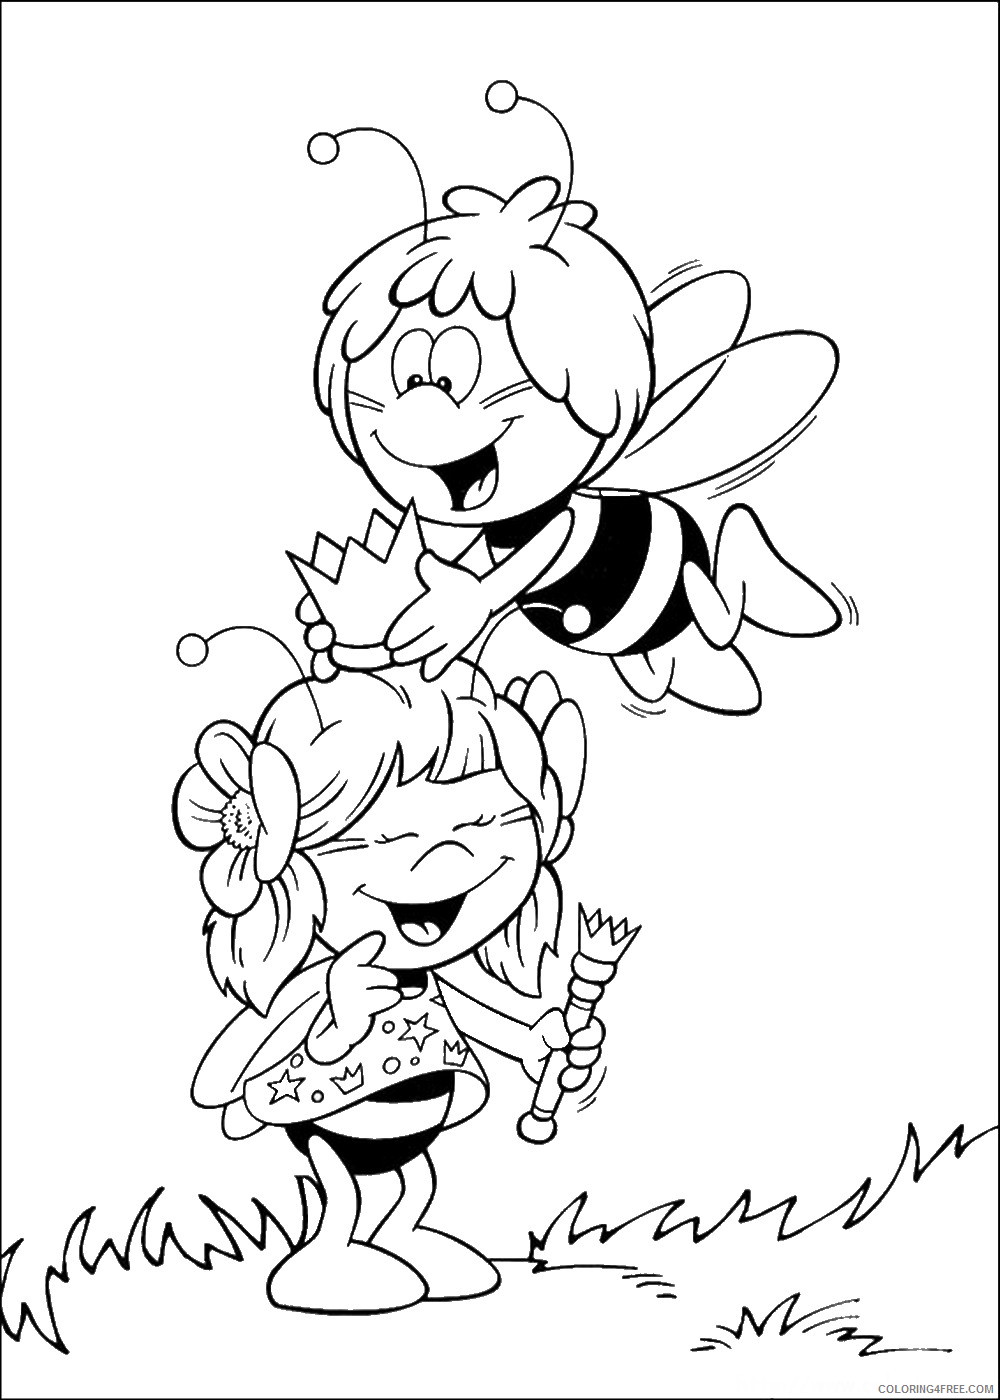 Maya the Bee Coloring Pages Cartoons maya_cl_04 Printable 2020 4003 Coloring4free